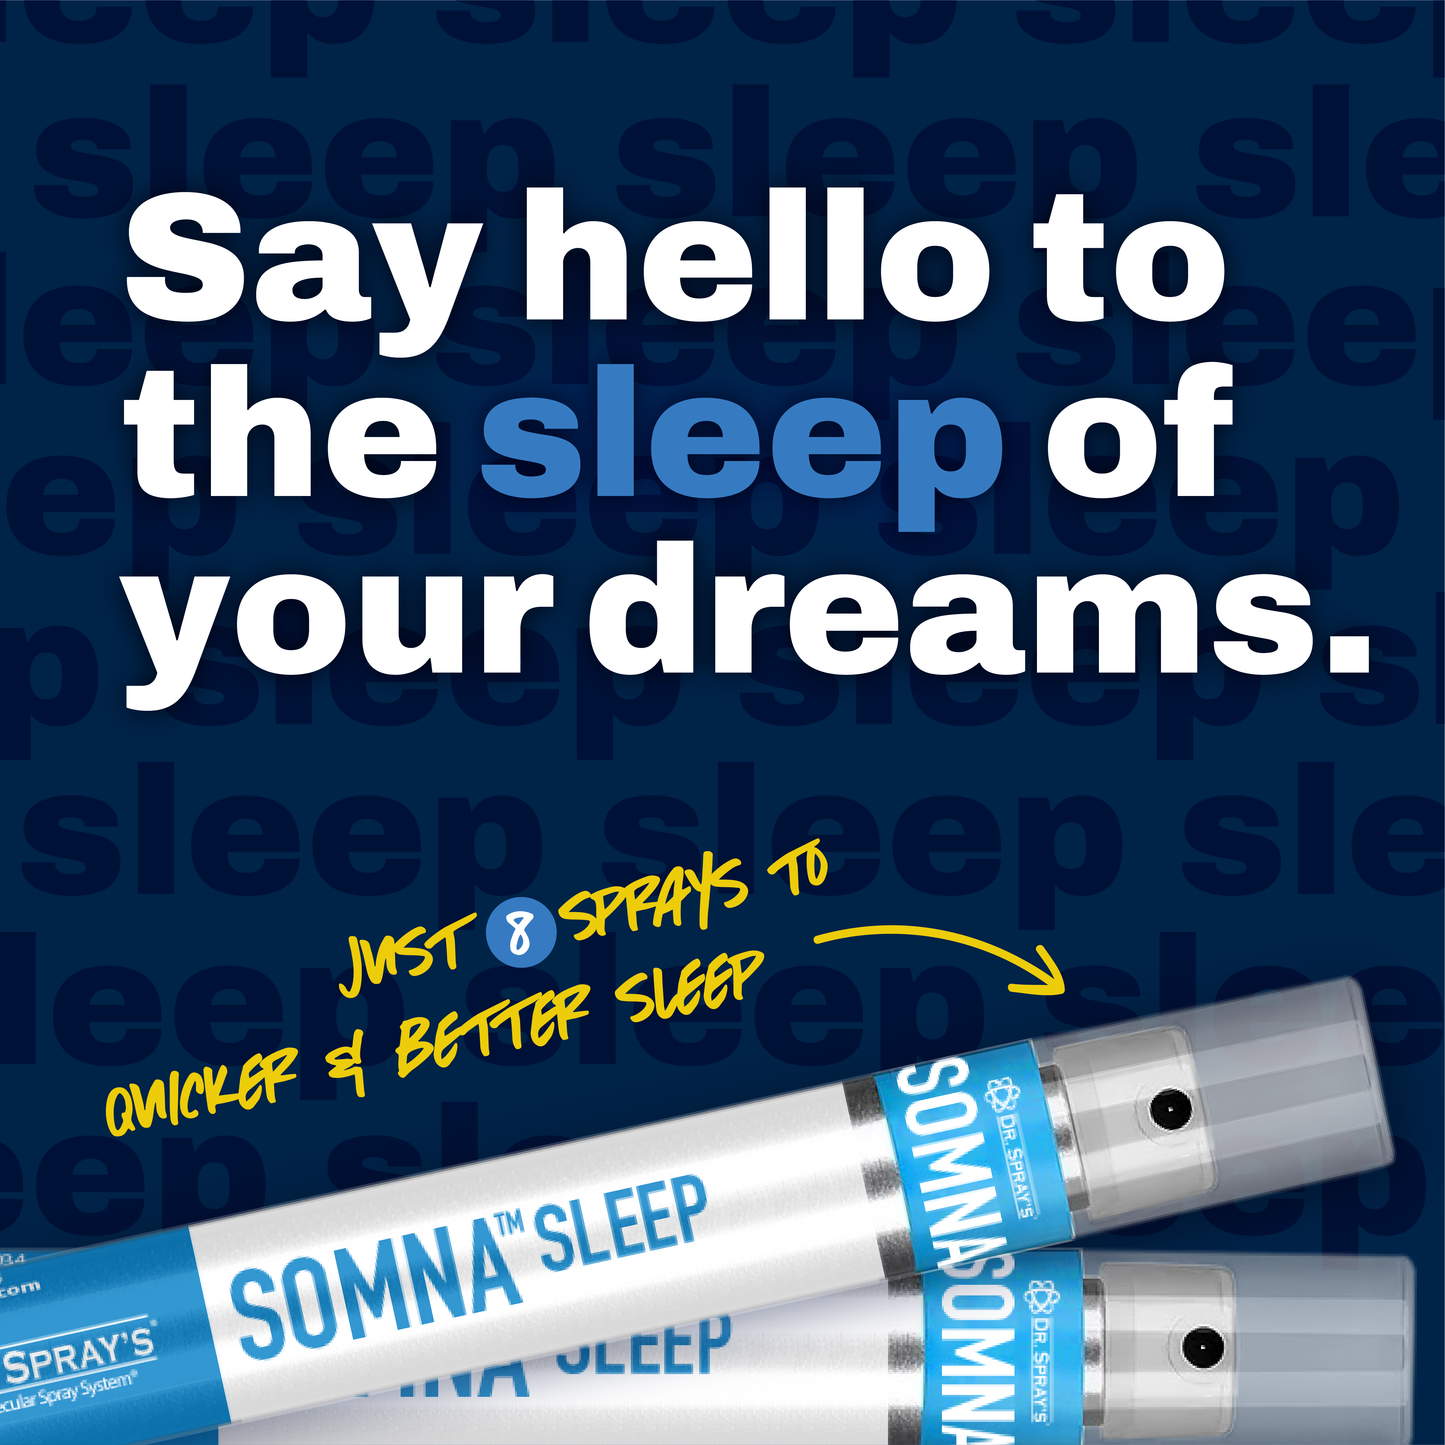 Copy of Somna Sleep Spray - Auto Ship